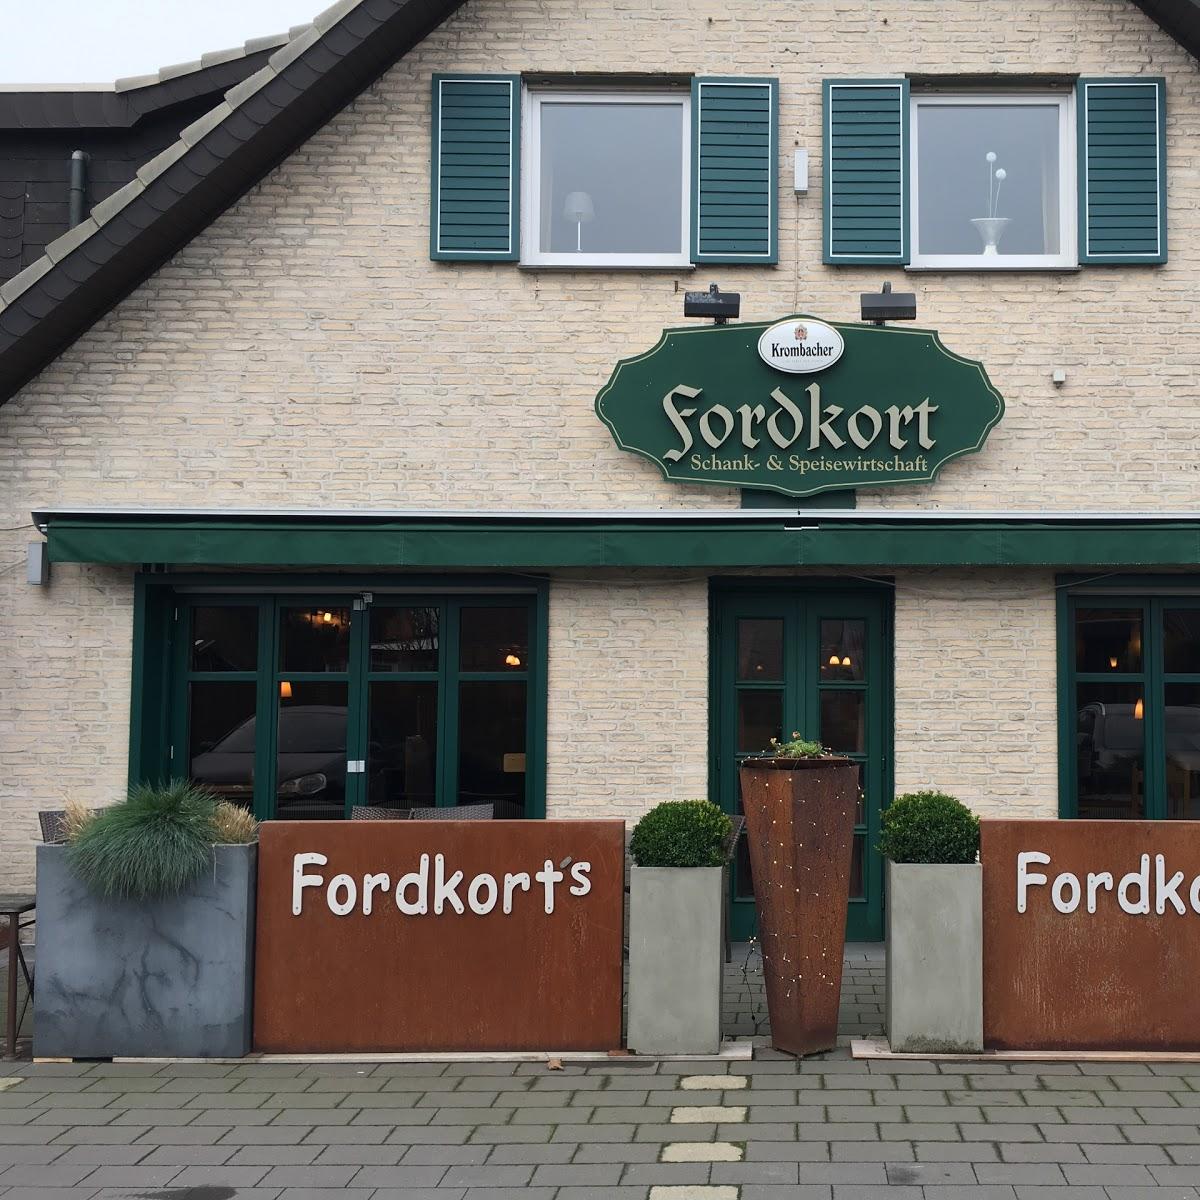 Restaurant "Fordkort bei Egon" in Verl